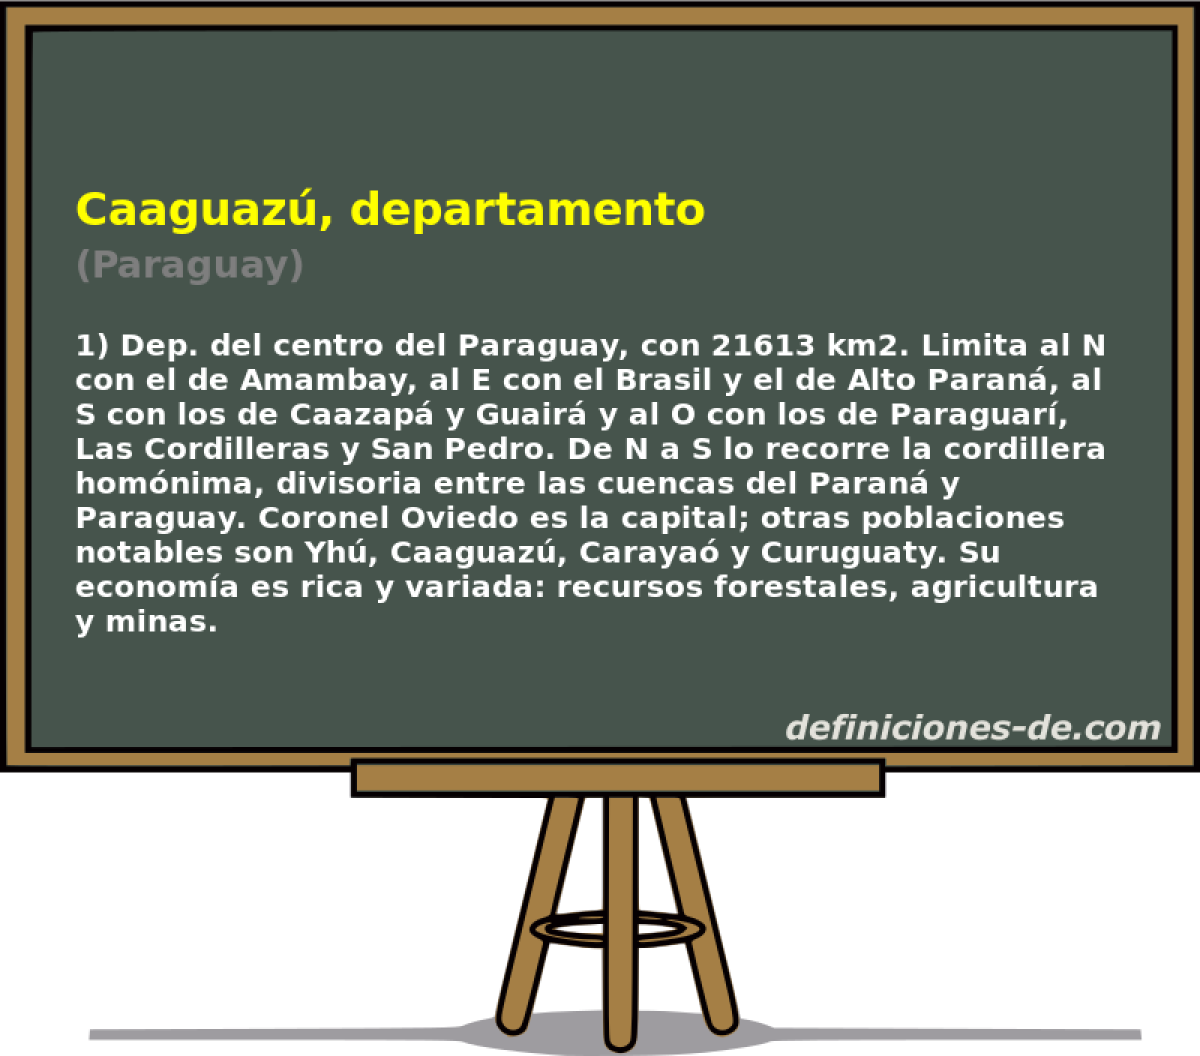 Caaguaz, departamento (Paraguay)